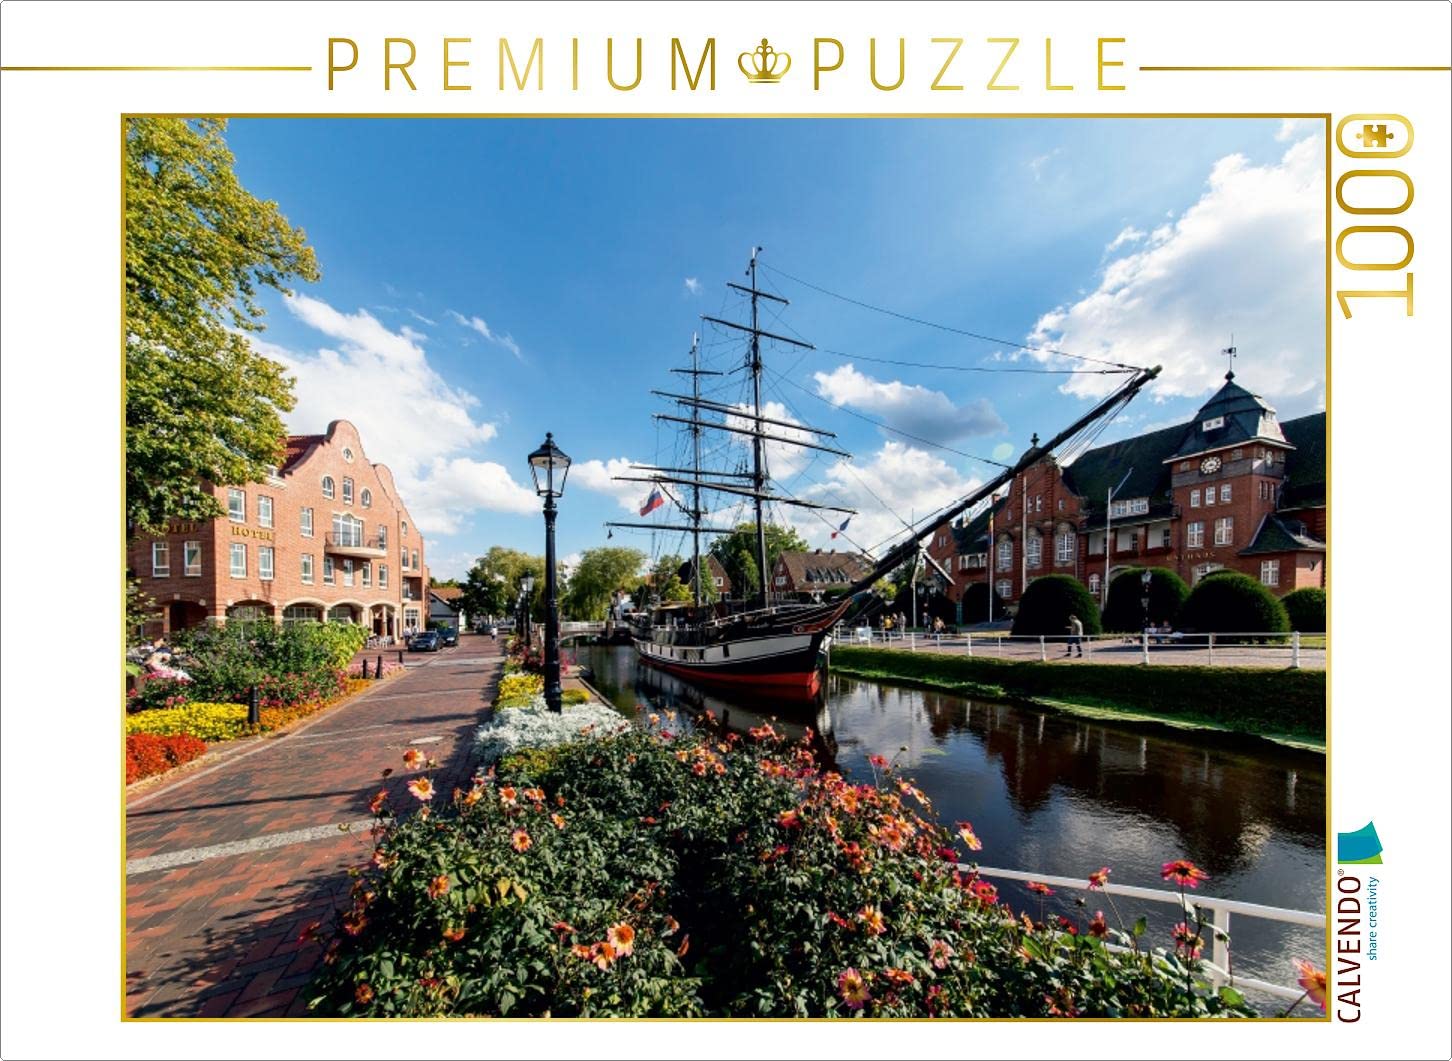 CALVENDO Puzzle Papenburg 1000 Teile Lege-Größe 64 x 48 cm Foto-Puzzle Bild von Andrea Dreegmeyer